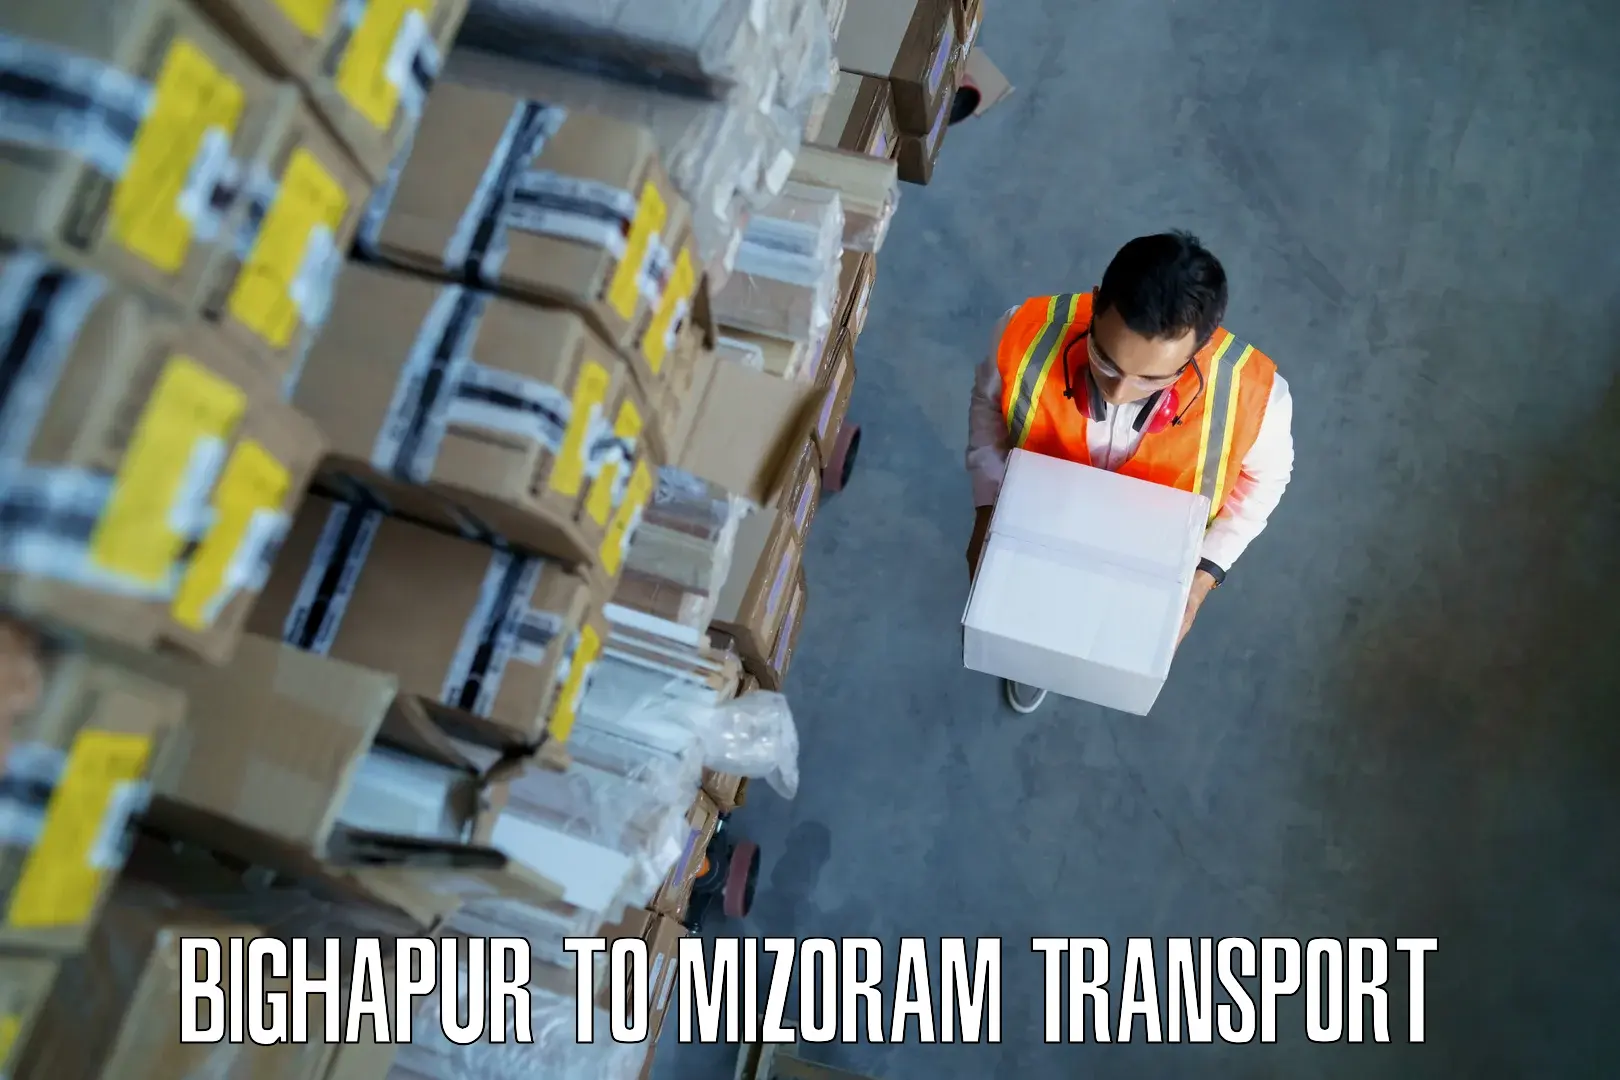 Daily transport service Bighapur to Mizoram